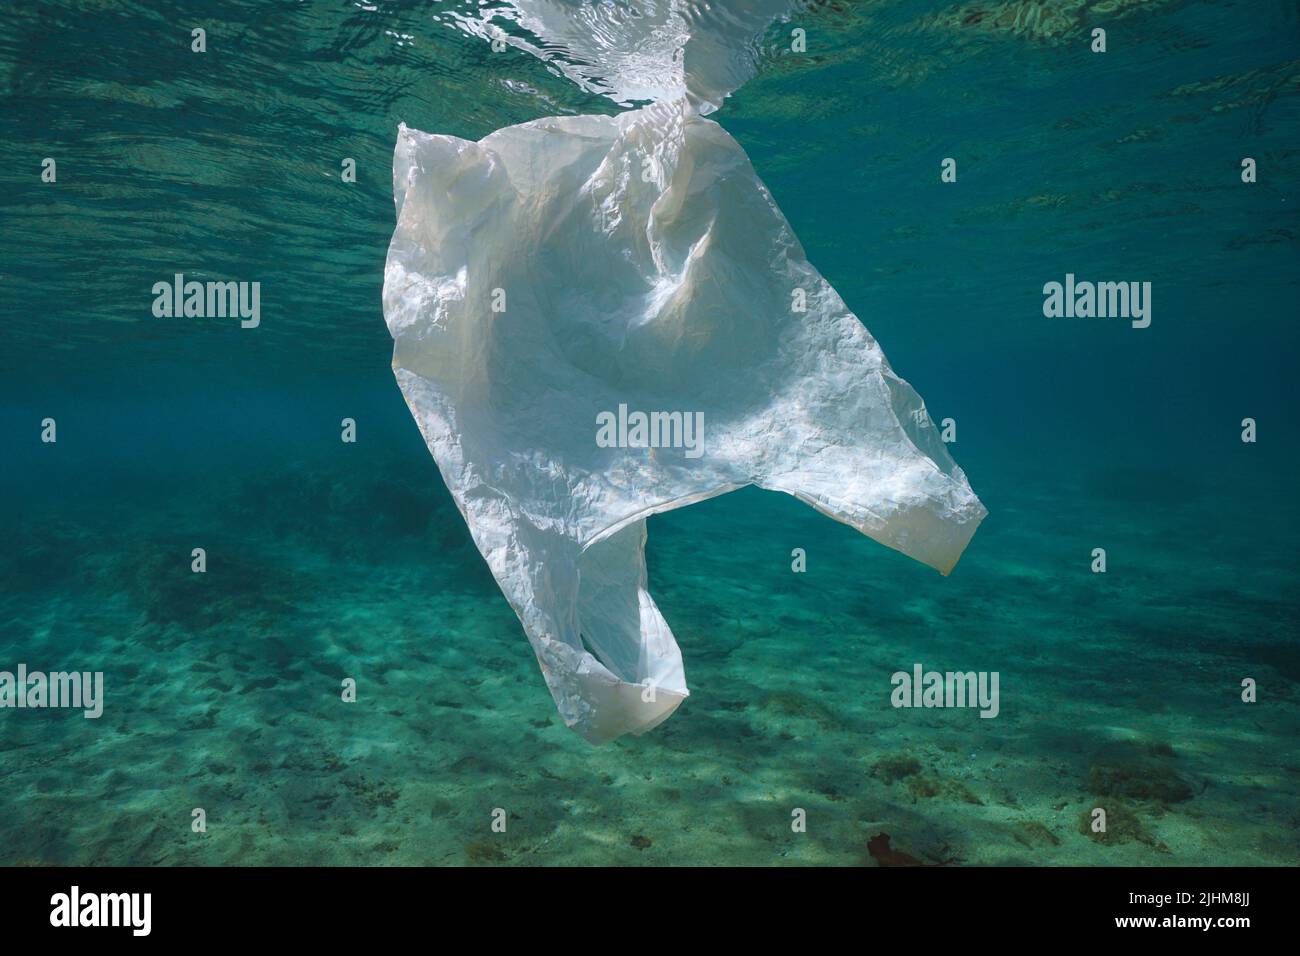 Una bolsa de plástico blanco bajo el agua, contaminación de desechos plásticos en los océanos Foto de stock